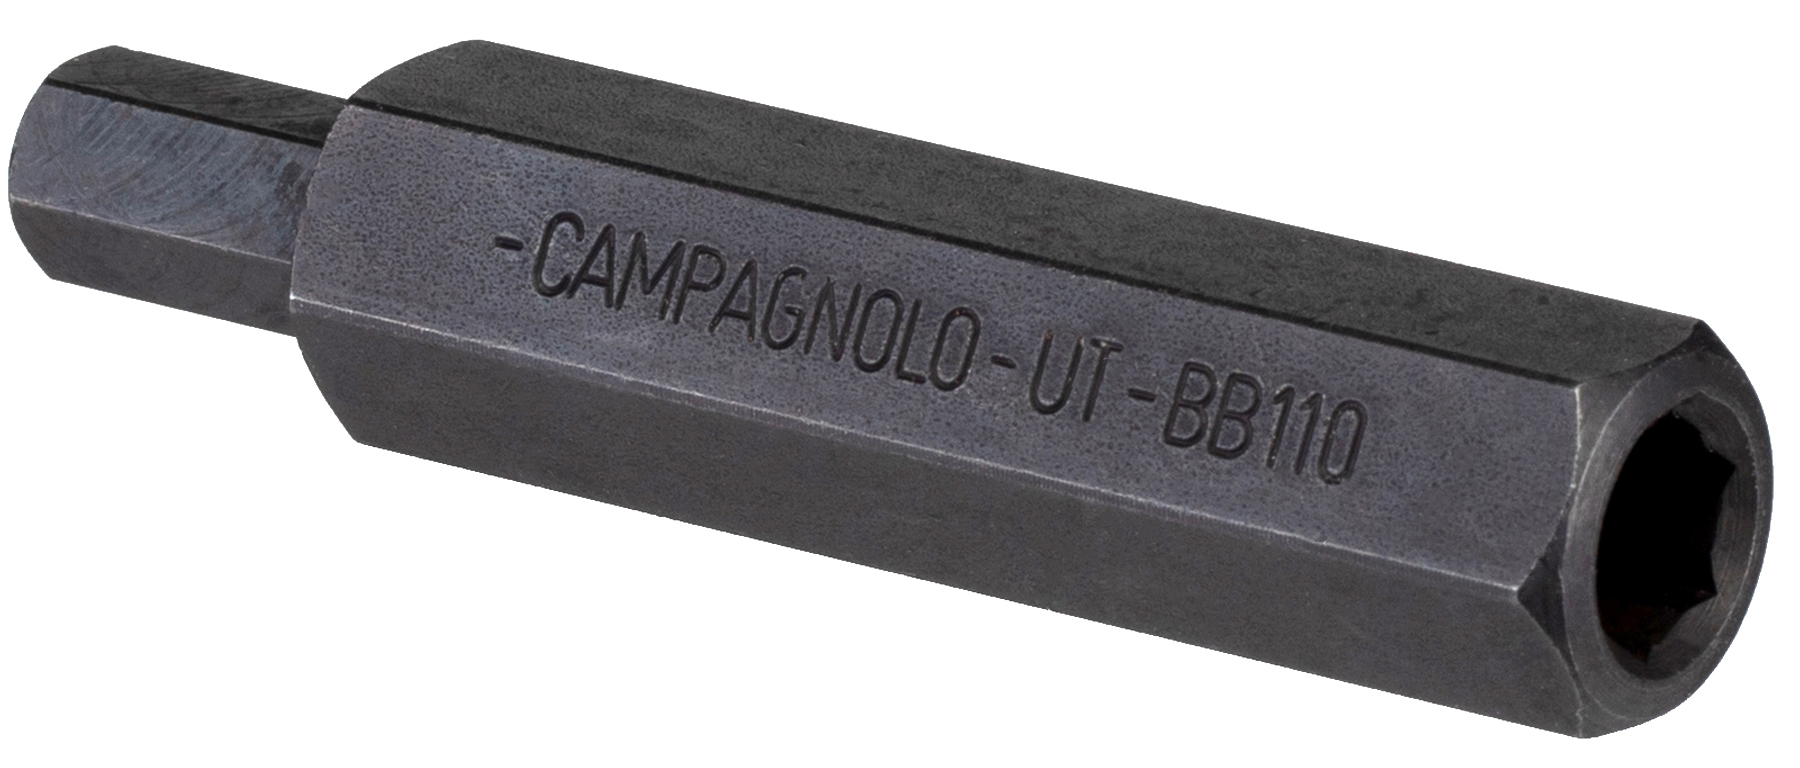 Campagnolo Ultra-Torque UT-BB110 Crank Bolt Tool